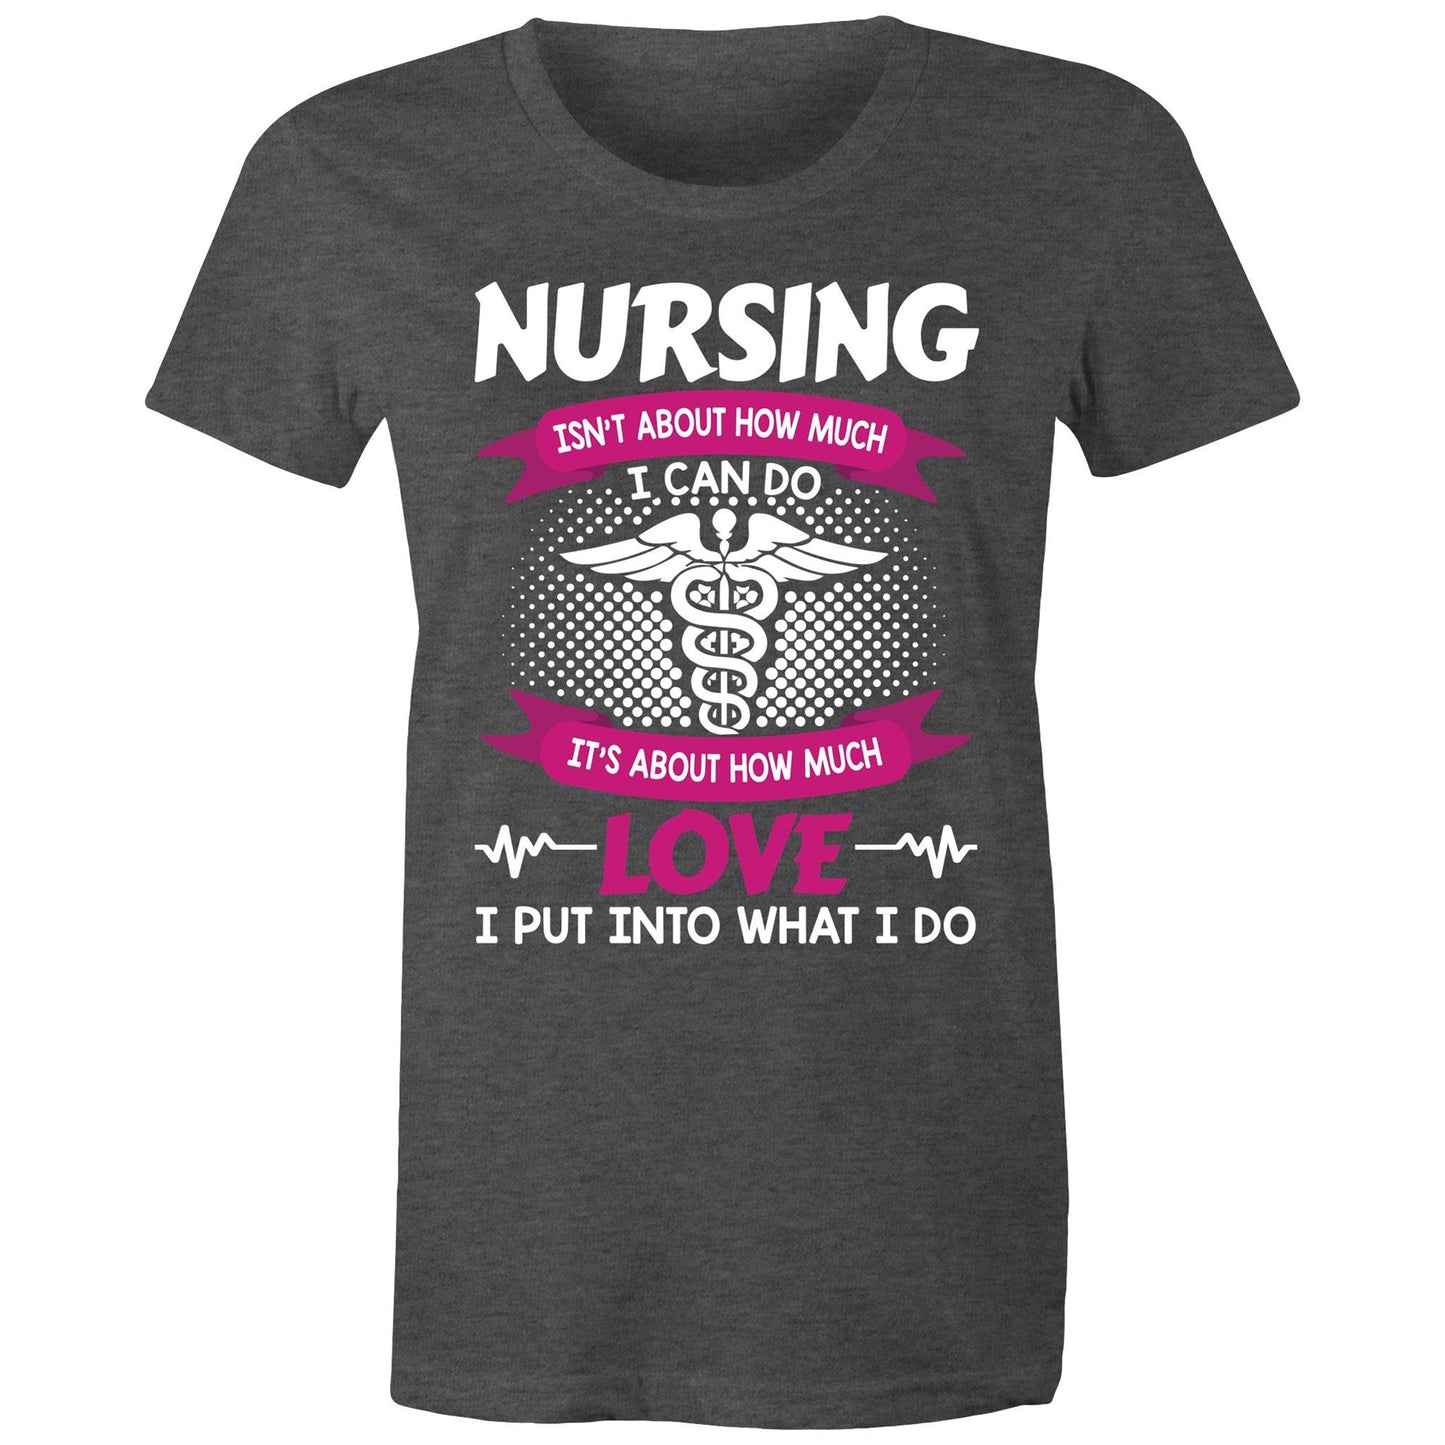 Love what I do Nursing Women's Maple Tee